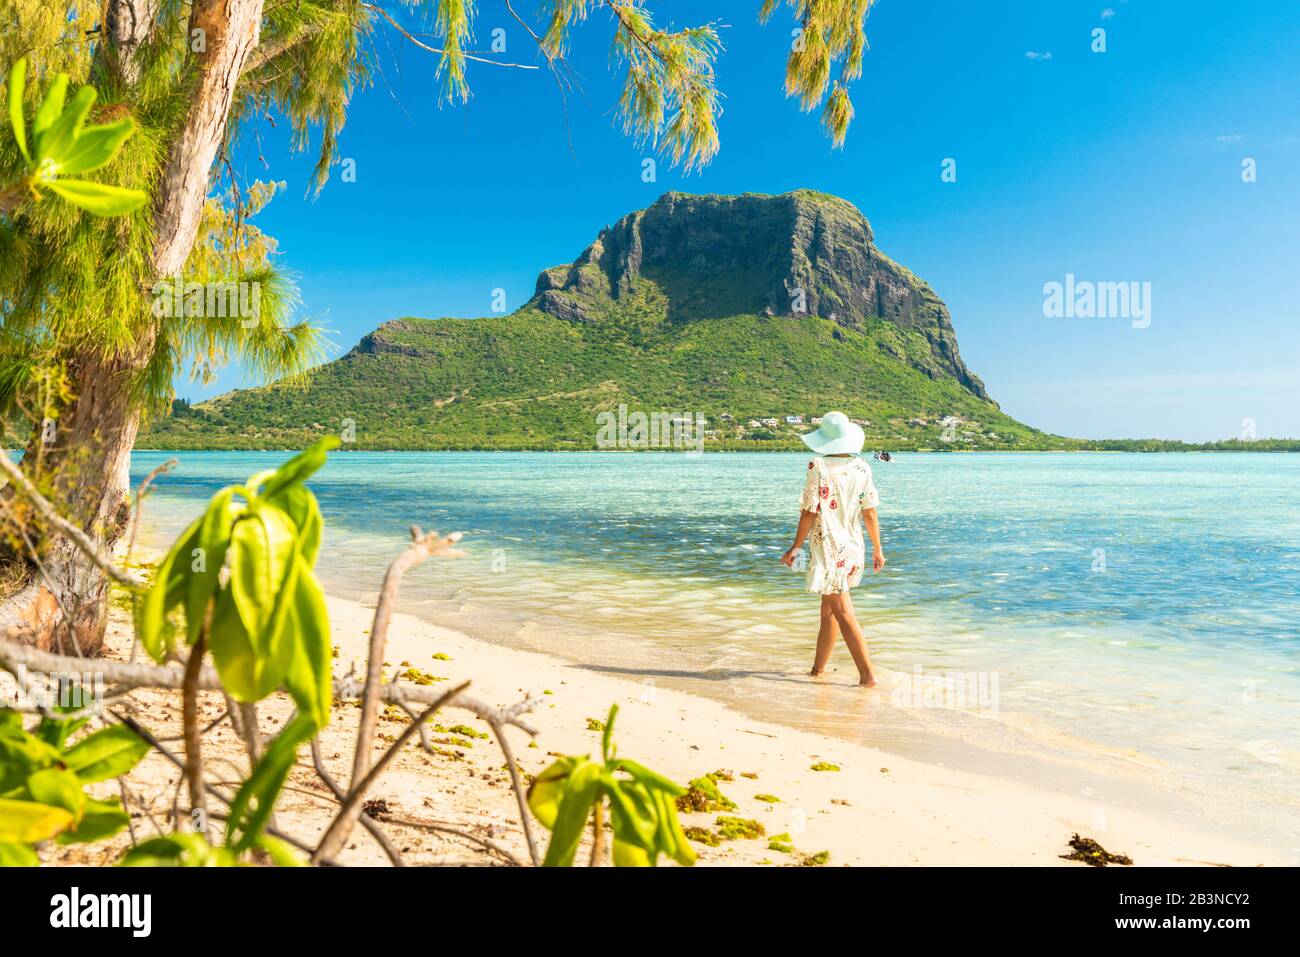 Frau, die am Strand mit tropischem Sand spazieren geht, Ile aux Benitiers, La Gaulette, Le Morne, Black River, Mauritius, Indischer Ozean, Afrika Stockfoto